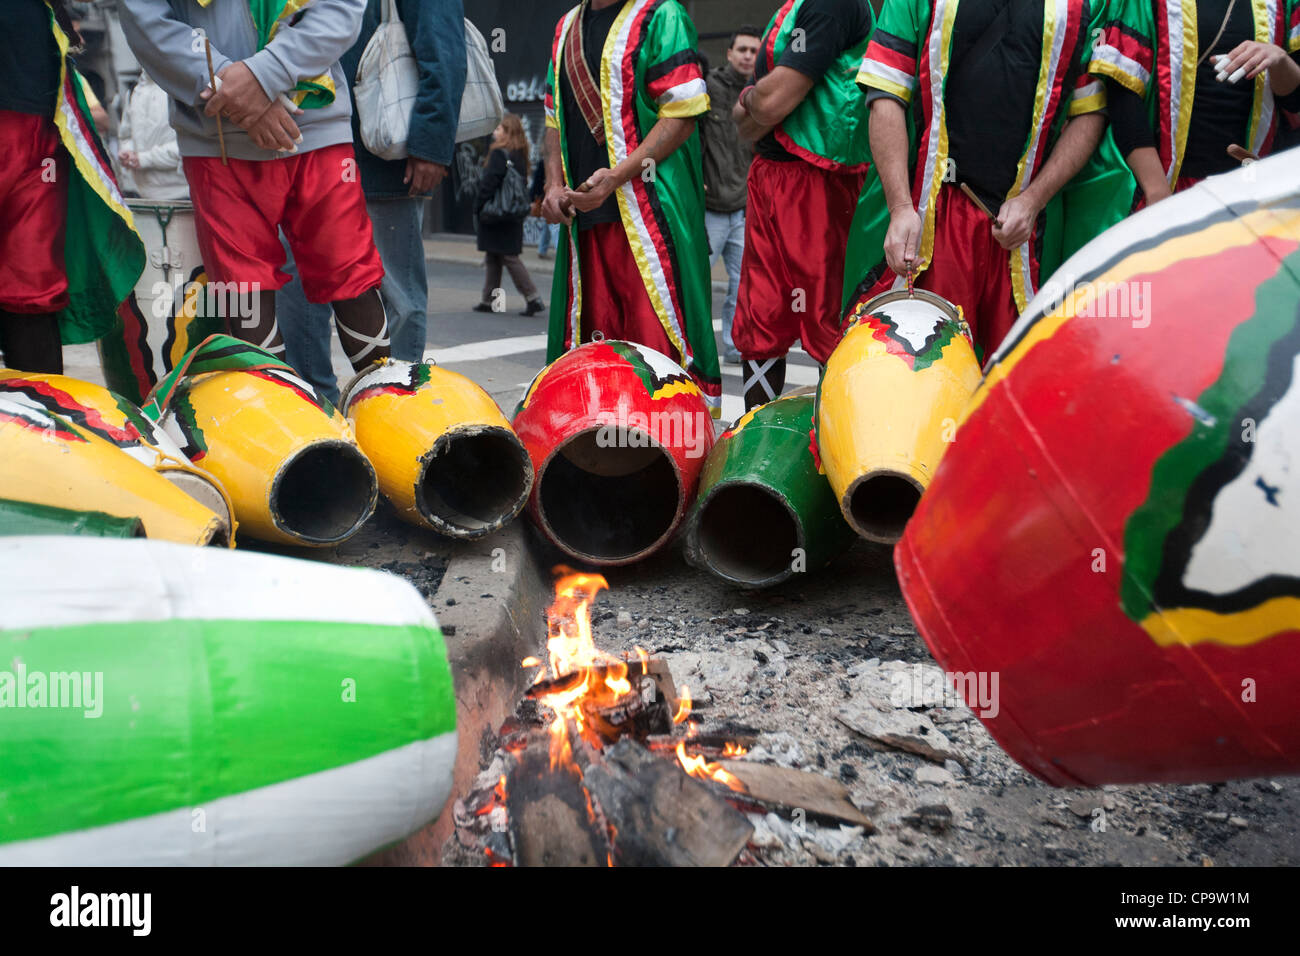 Trommeln am ersten Afro Descentes Karneval in Buenos Aires Argentinien Aufwärmen Stockfoto